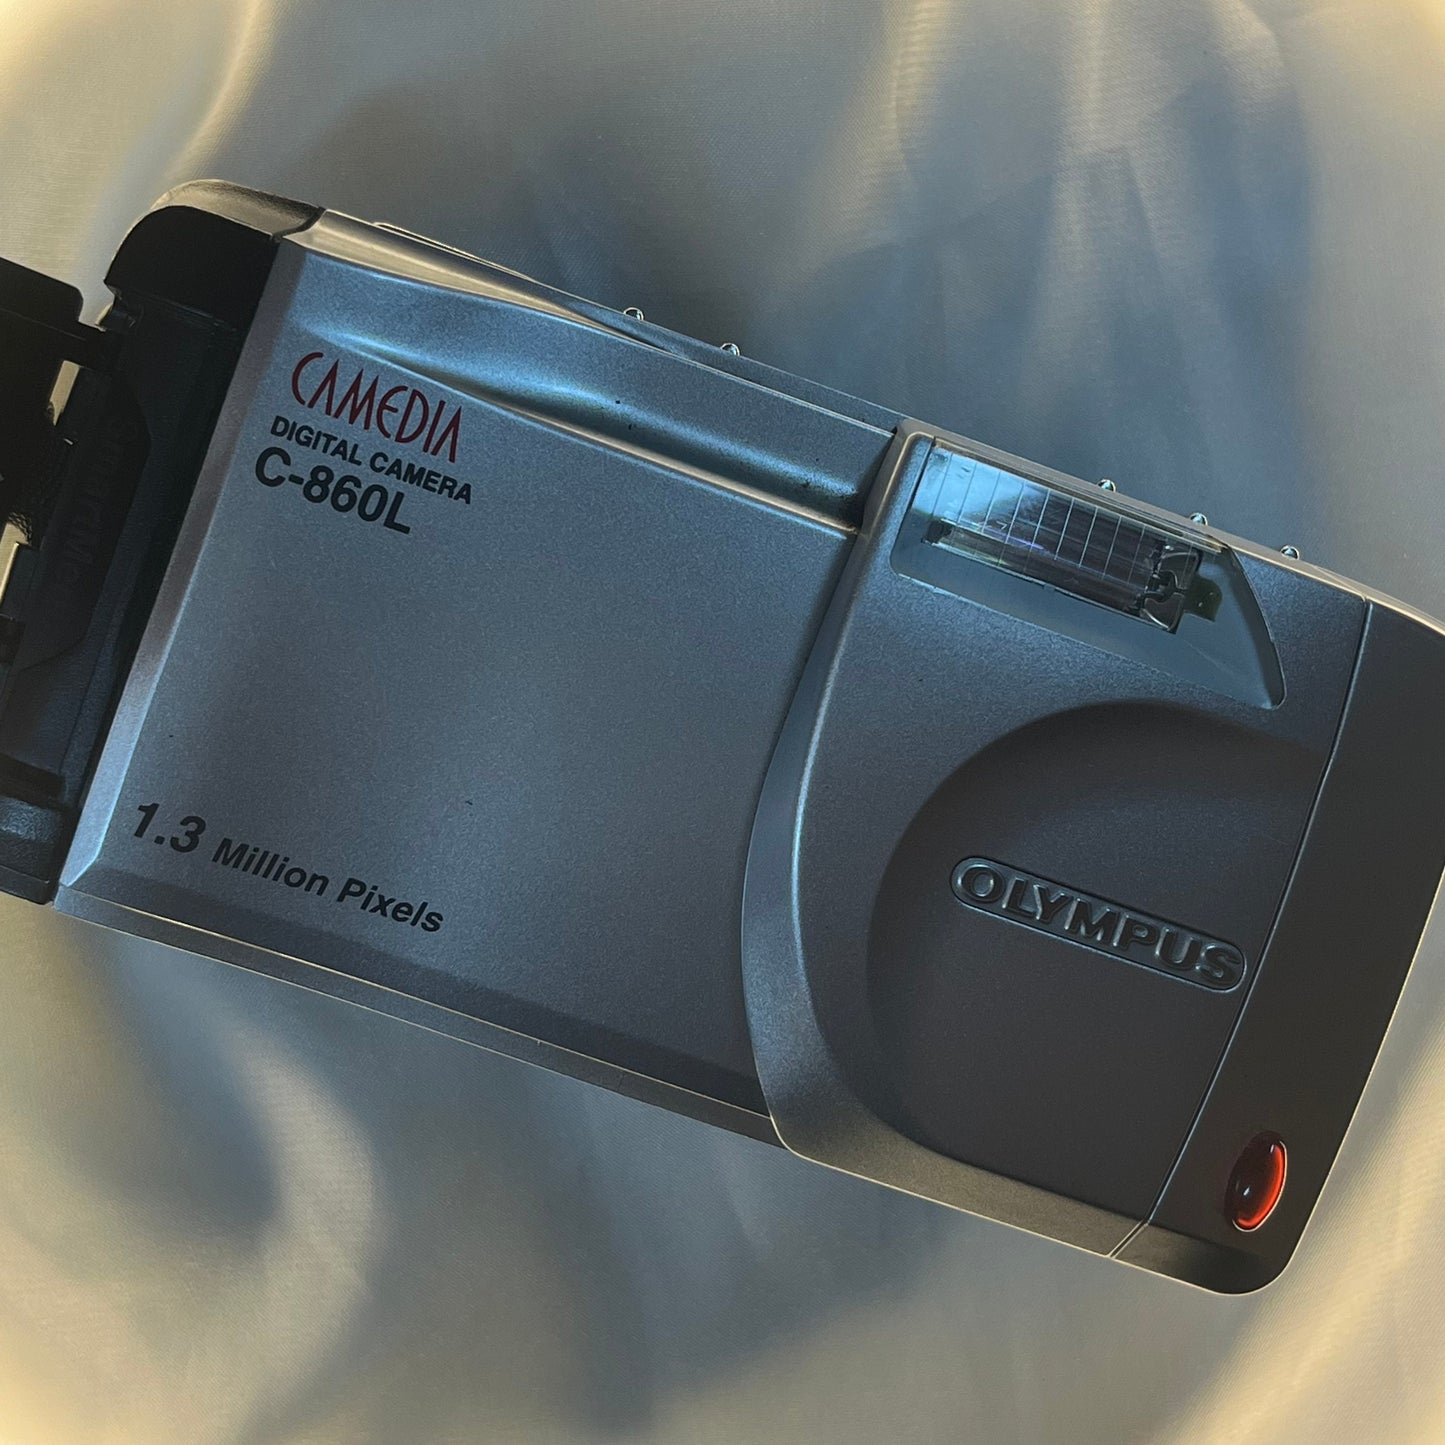 Olympus Camedia C-860L 1.3 mp Silver